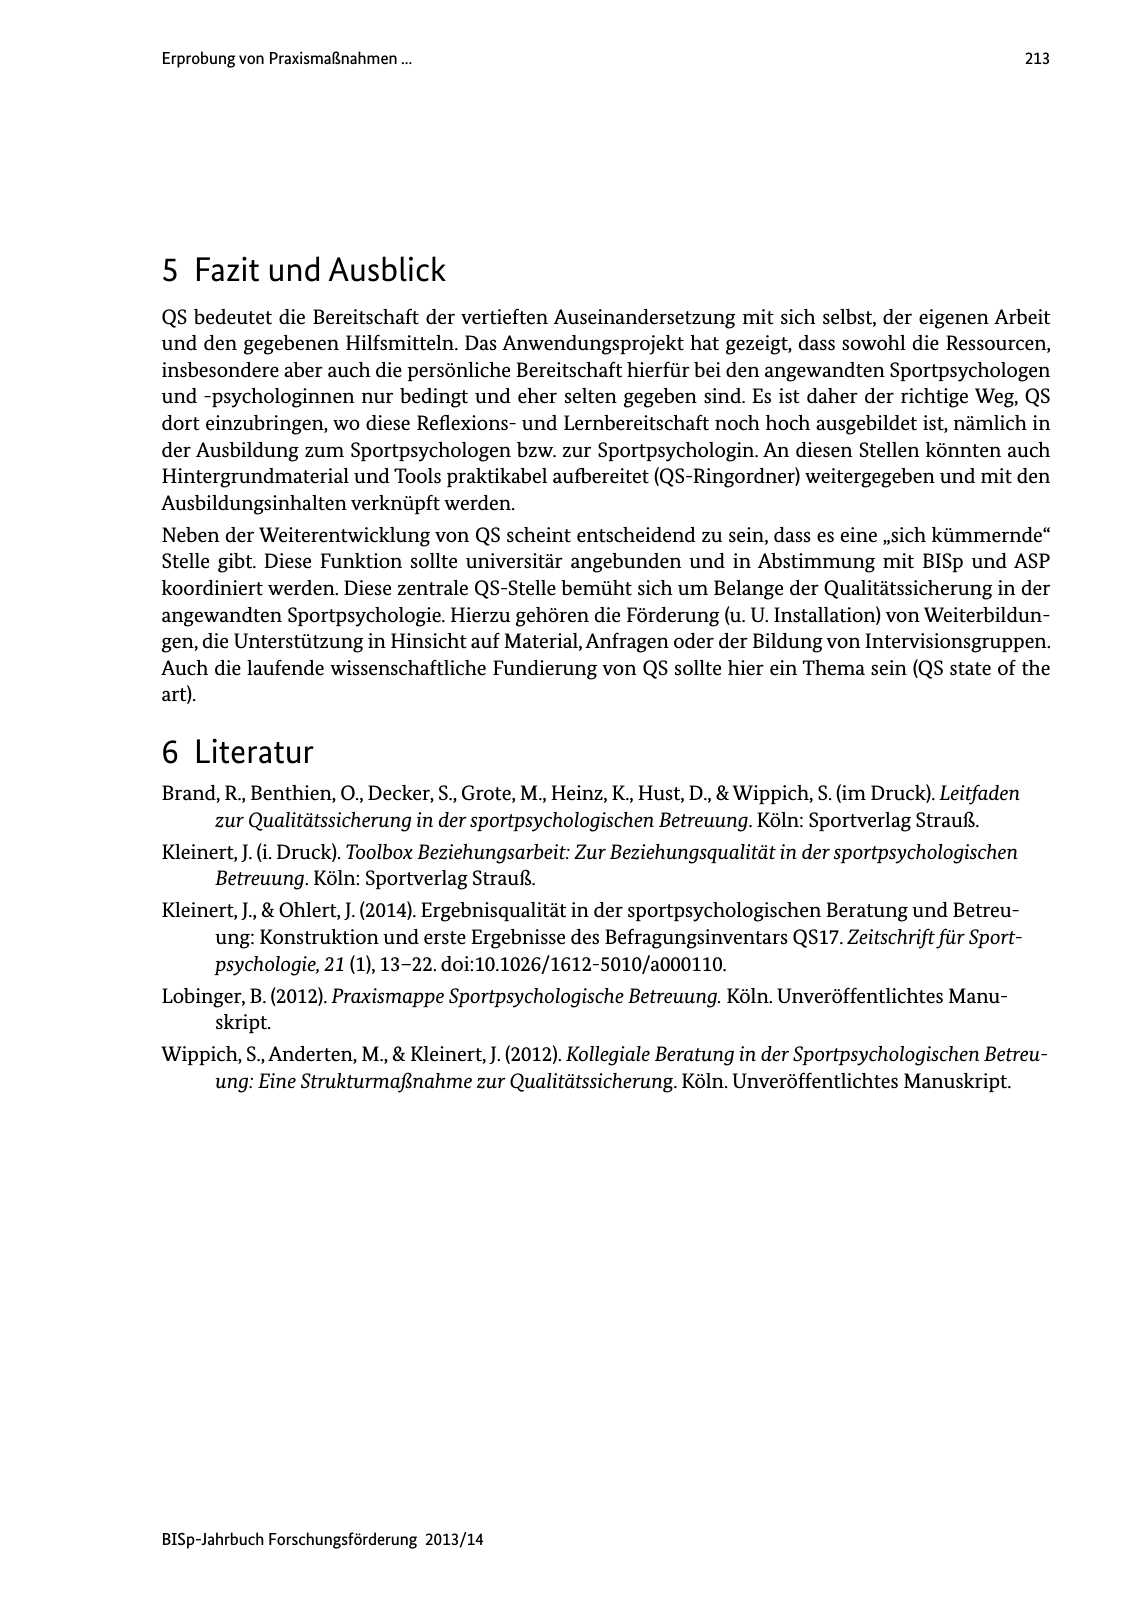 Vorschau BISp-Jahrbuch Forschungsförderung 2013/14 Seite 214